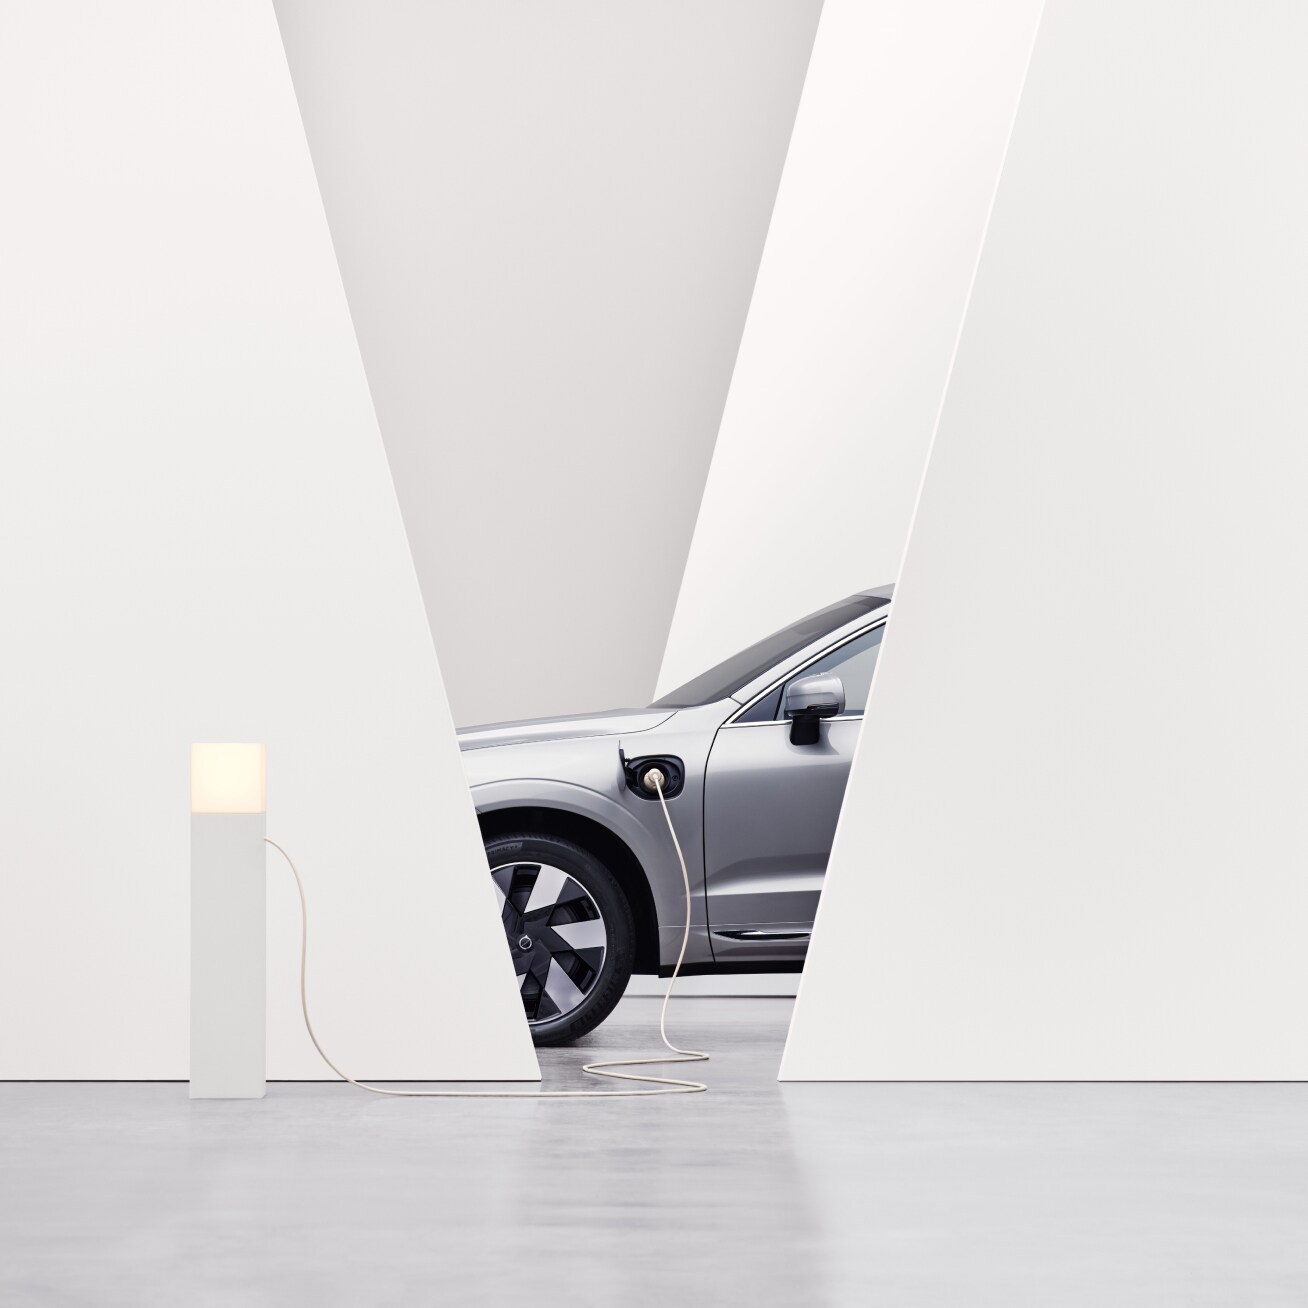 Vue partielle d'une Volvo d'un angle latéral, dans un environnement intérieur blanc, en charge à une borne de recharge